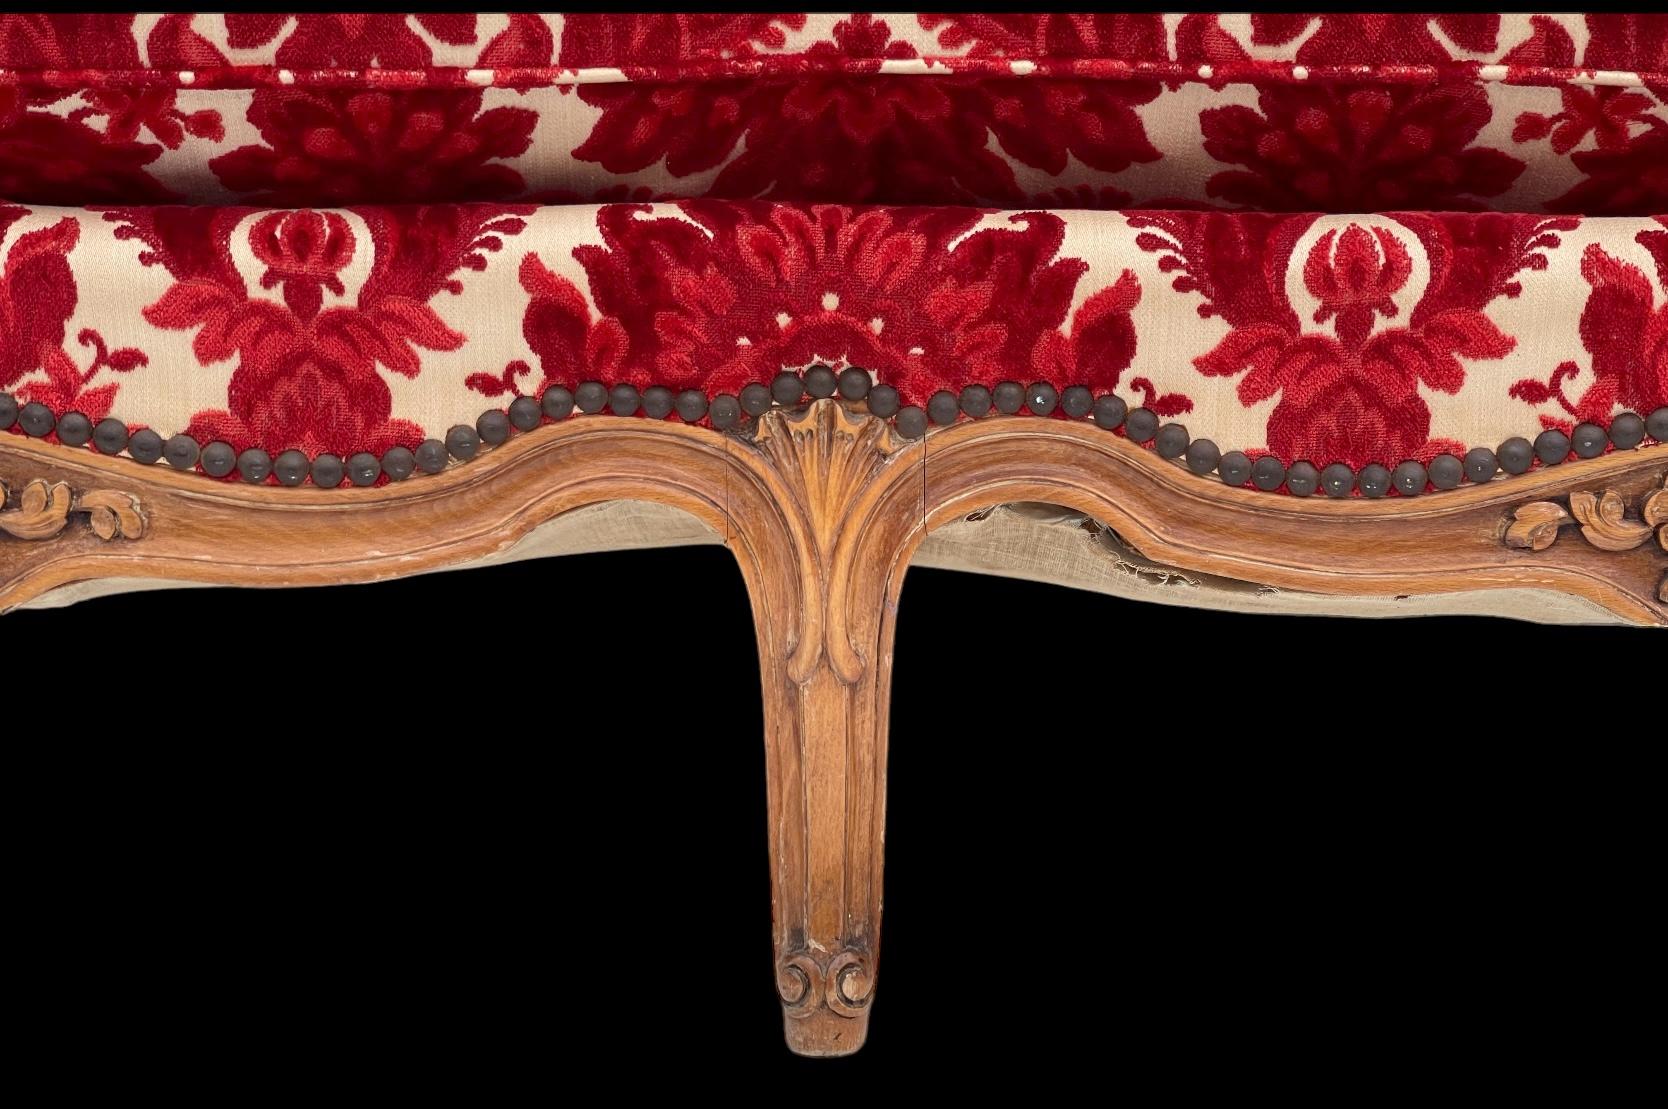 Voici un magnifique canapé français des années 1930 de style Louis XV, en velours rouge d'époque, avec un coussin rembourré. Il est sans marque et en très bon état. 

Mes frais de port sont pour les États-Unis continentaux seulement et peuvent